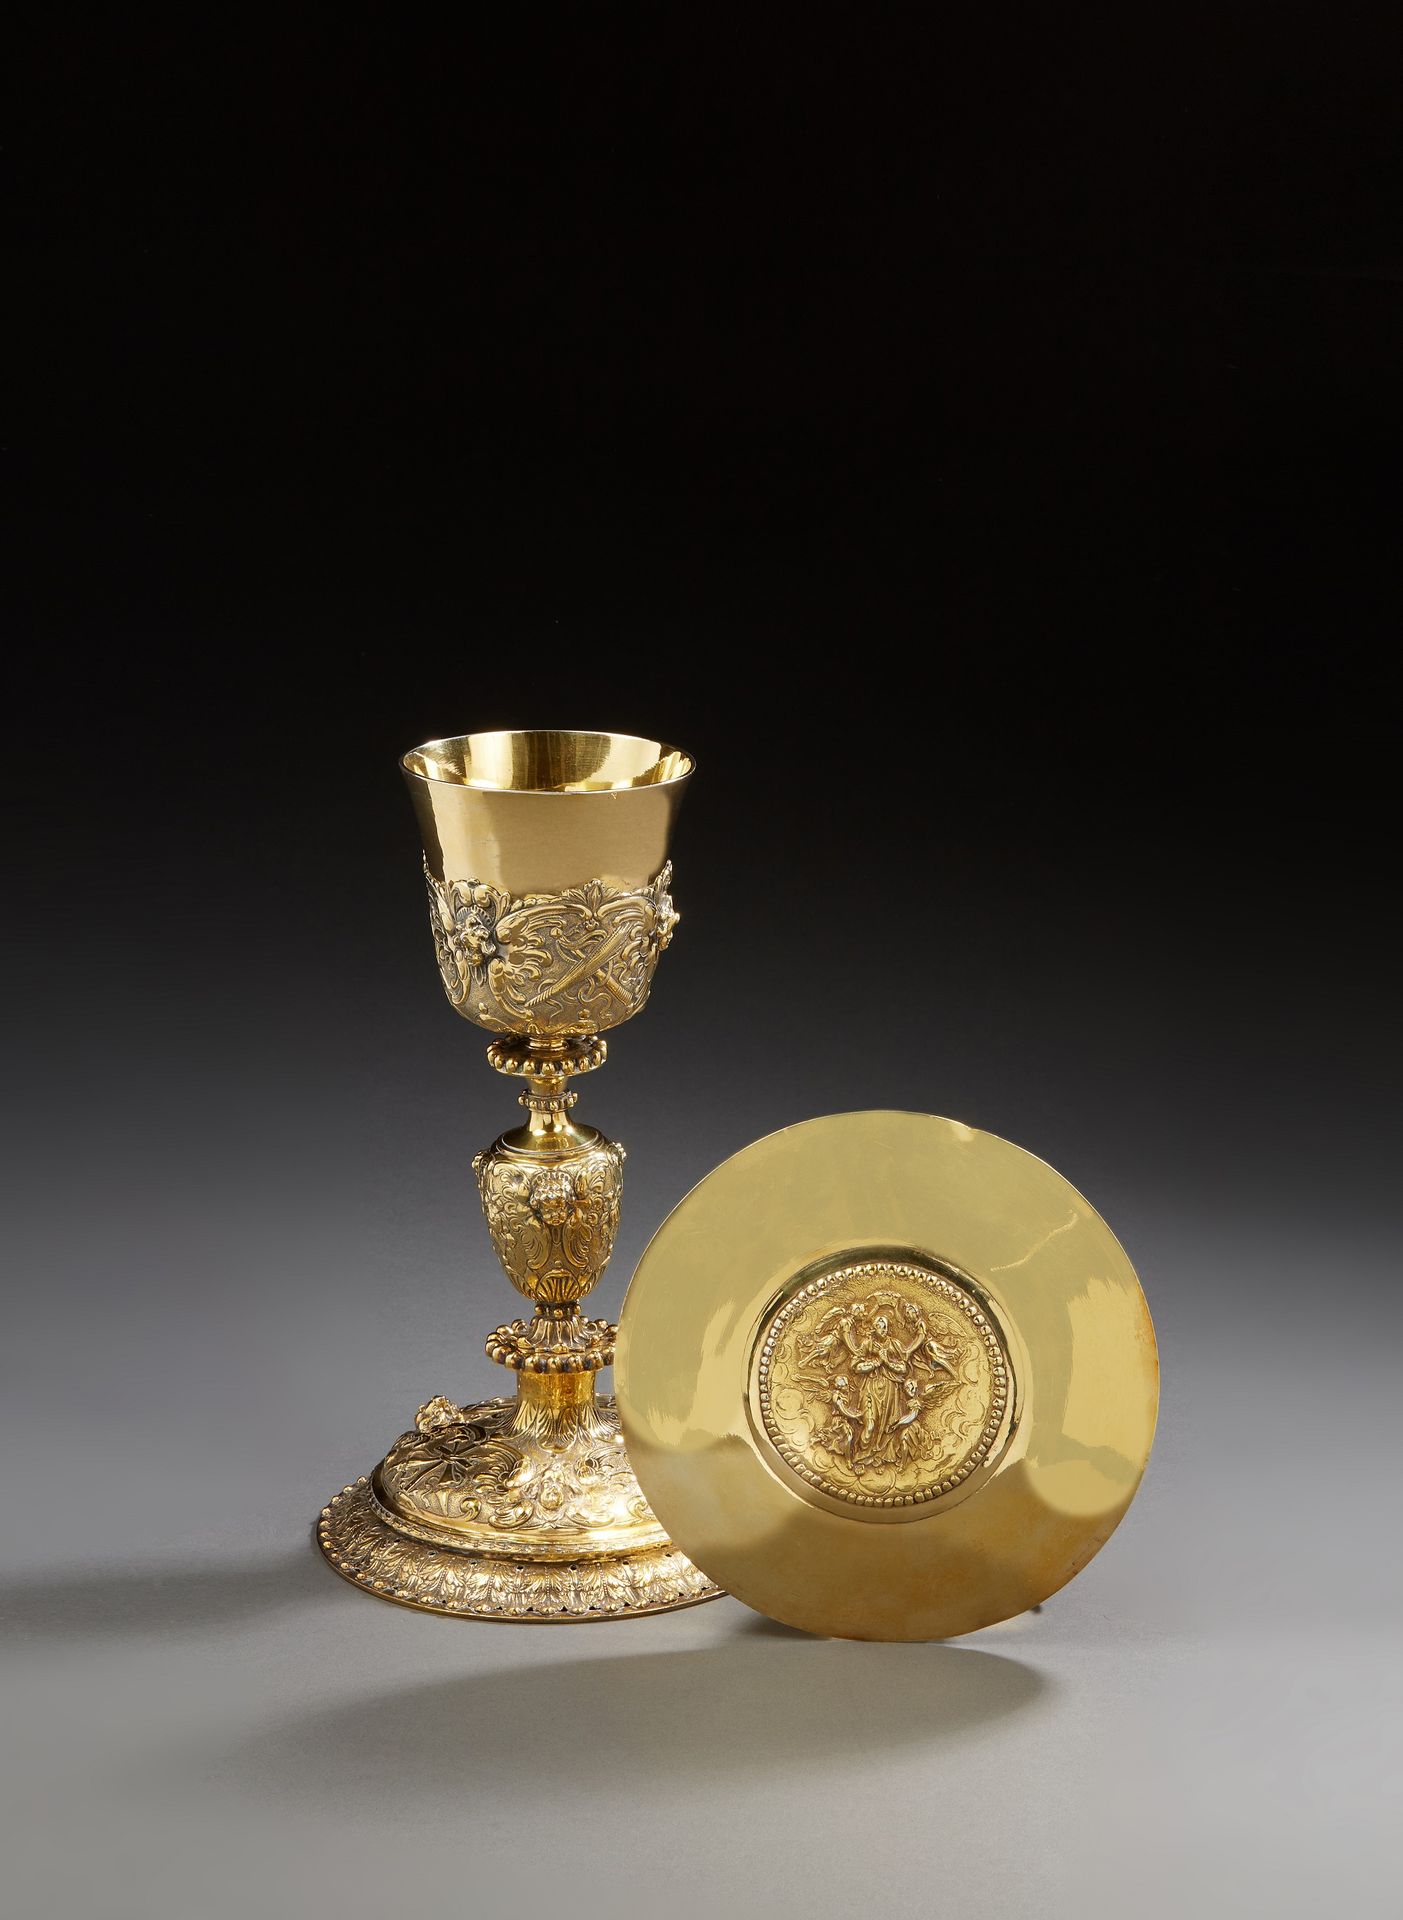 Null 巴黎 1677 - 1680
压花、浇铸和镂空的镀金圣杯和圣饼。圣杯的底部压印着以珍珠为边的刺花楣，脚的顶部有三个天使的头像，在羊脂白玉的背景上交替着&hellip;